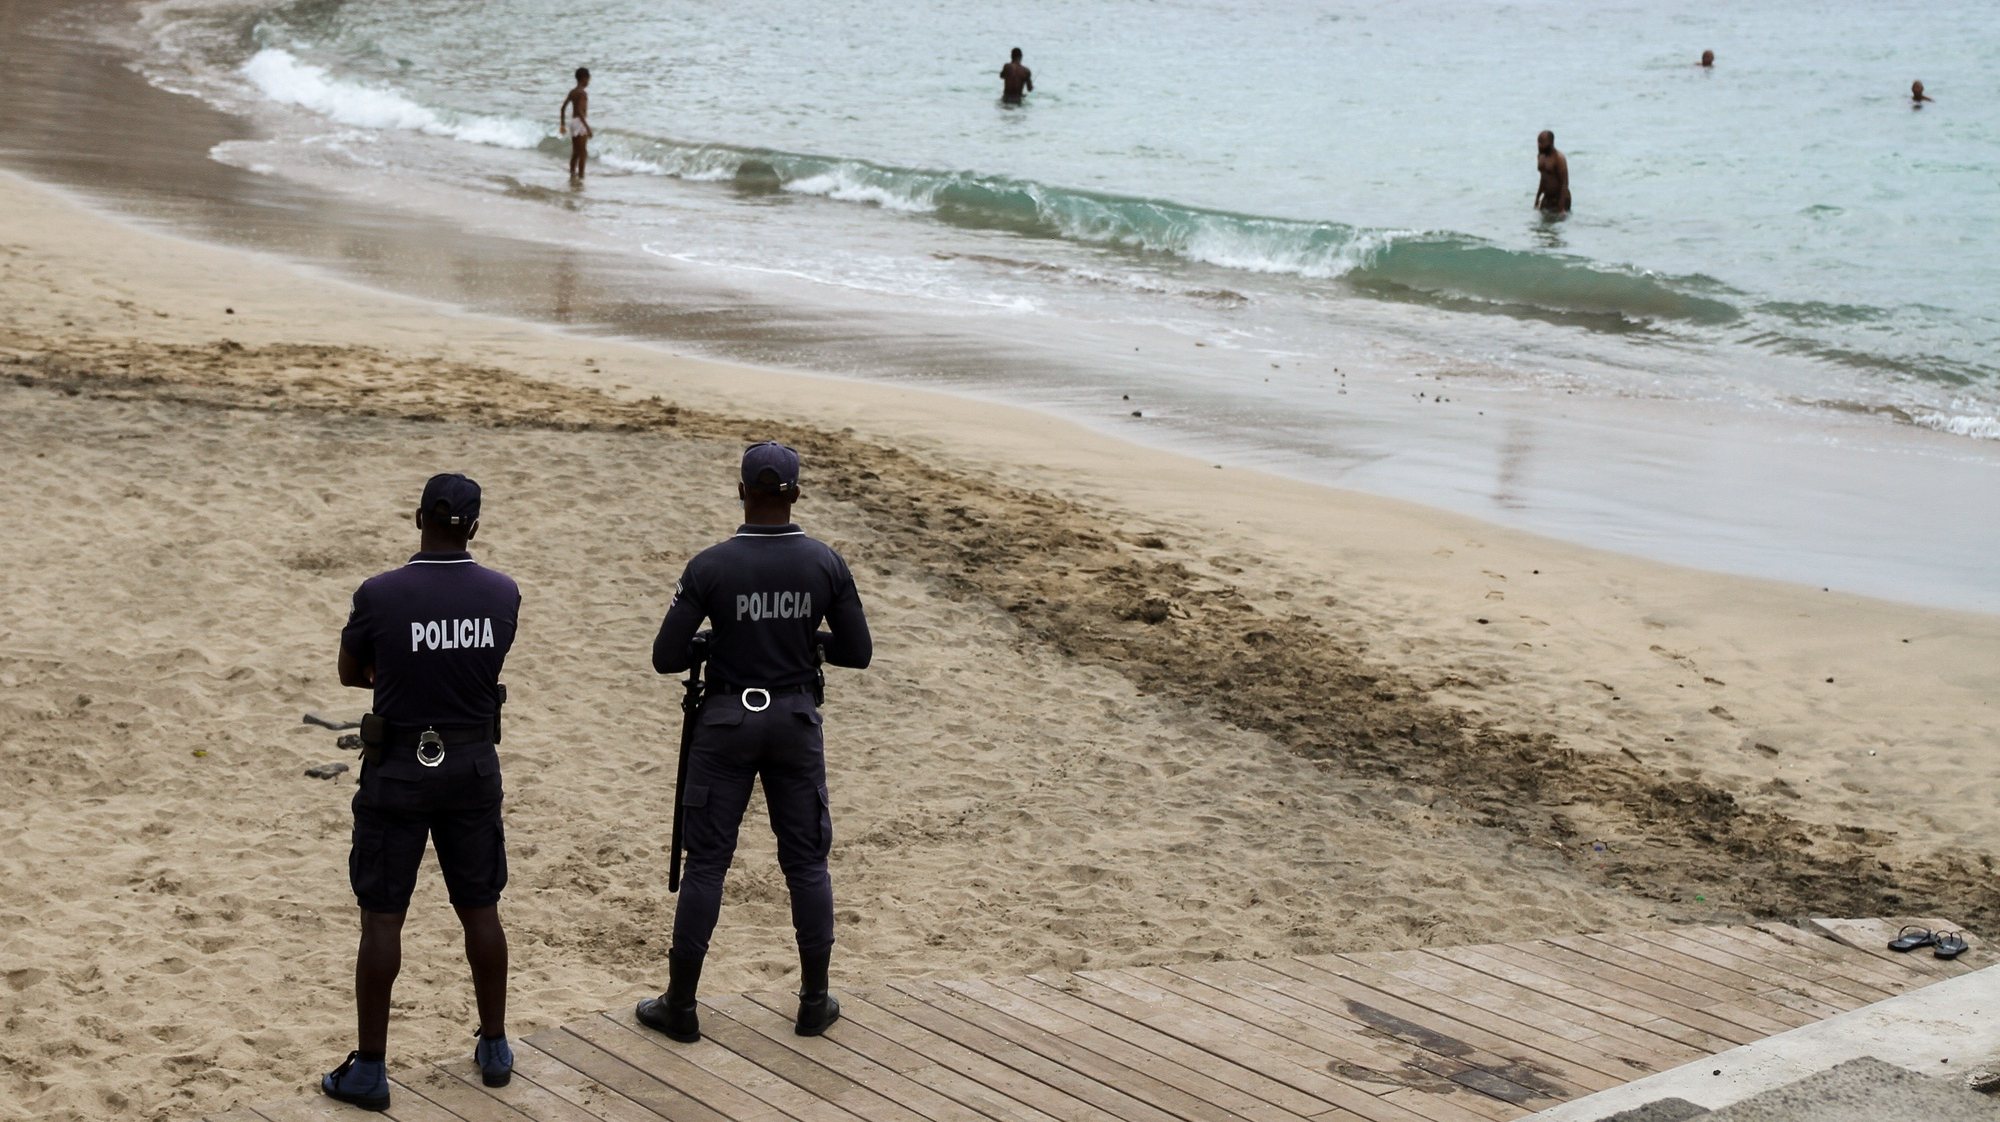 Agentes da polícia controlam os banhistas numa das praias da cidade da Praia, Cabo Verde, 07 de setembro de 2020. As praias da ilha de Santiago reabriram hoje quase seis meses depois das primeiras medidas para evitar a propagação da covid-19, para alegria dos banhistas, que mataram saudades da água do mar na capital de Cabo Verde. FERNANDO DE PINA/LUSA